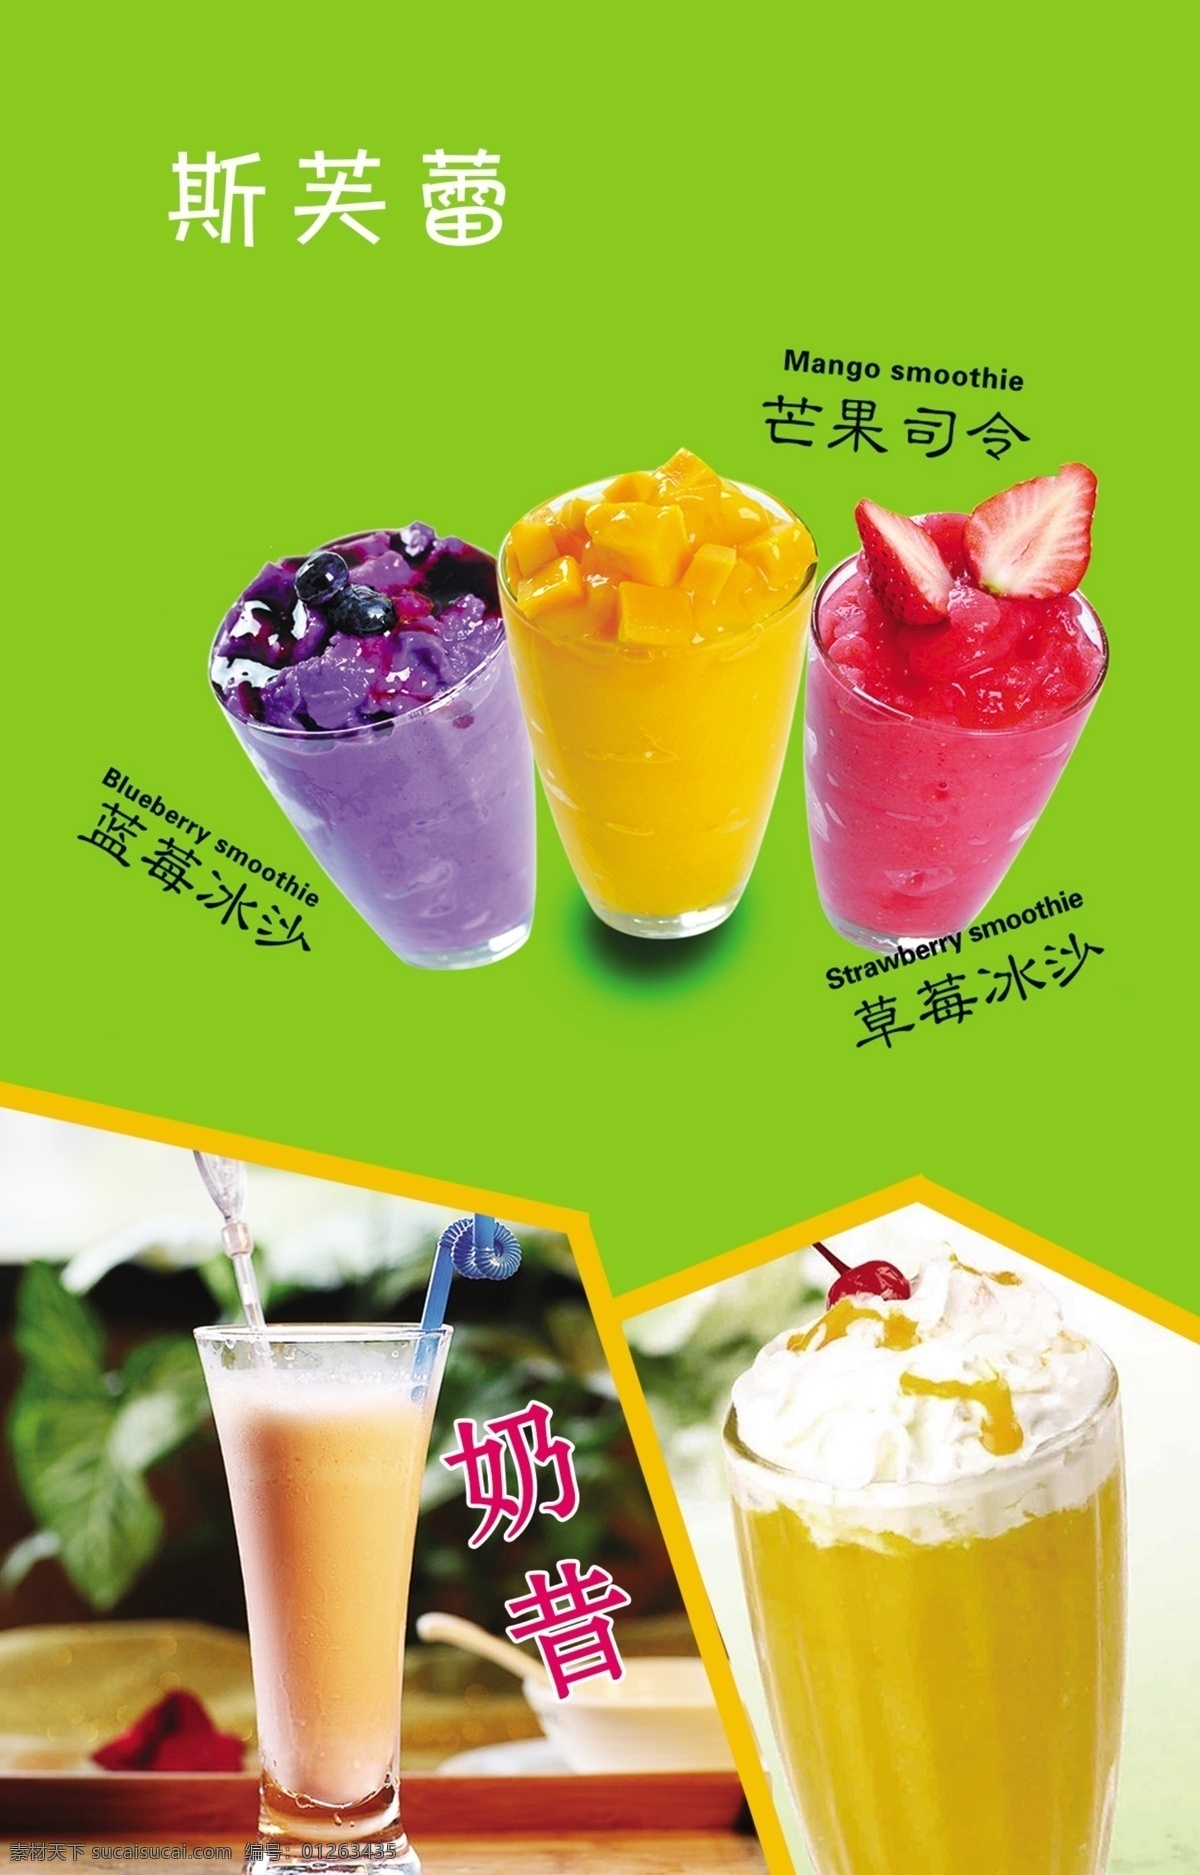 芒果司令 草莓沙冰 蓝莓沙冰 奶昔 分层 设计素材 宣传海报 促销广告 饮料